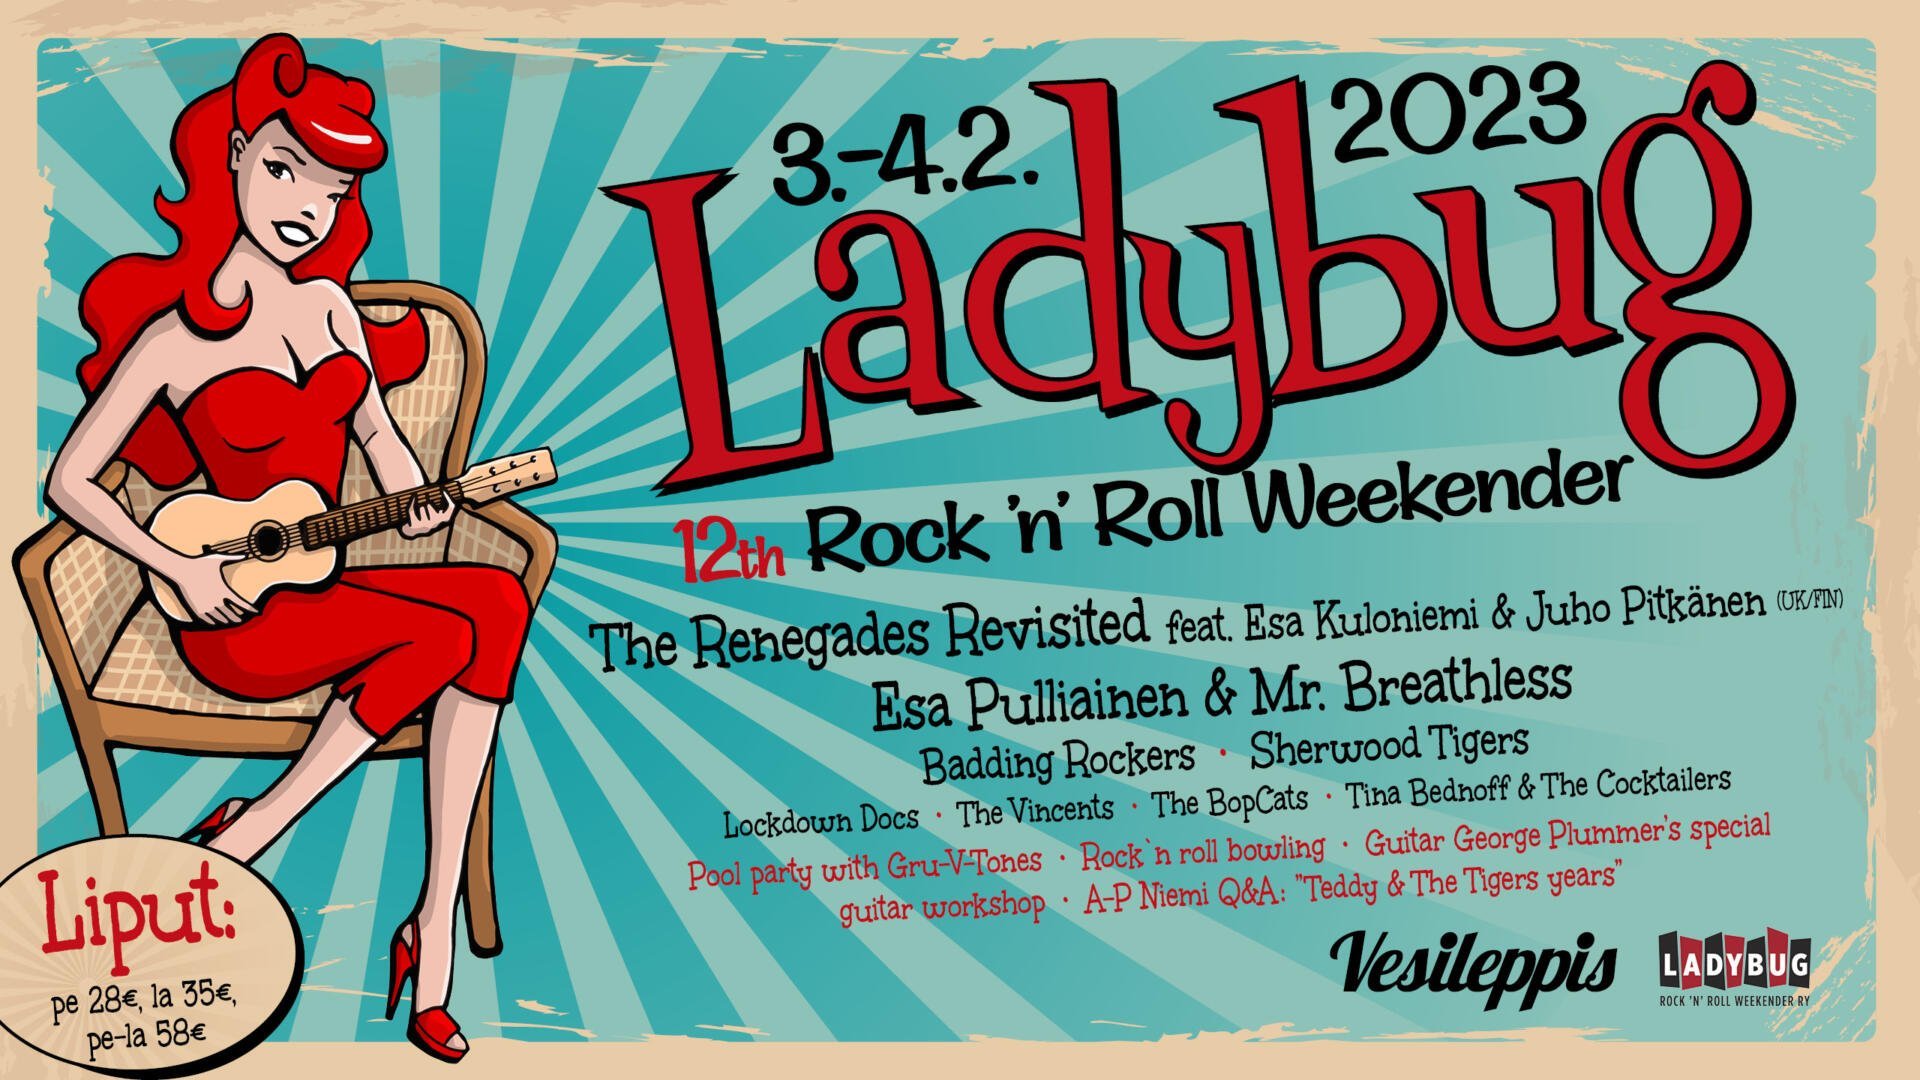 Ladybug Rock 'n' Roll Weekender 2023